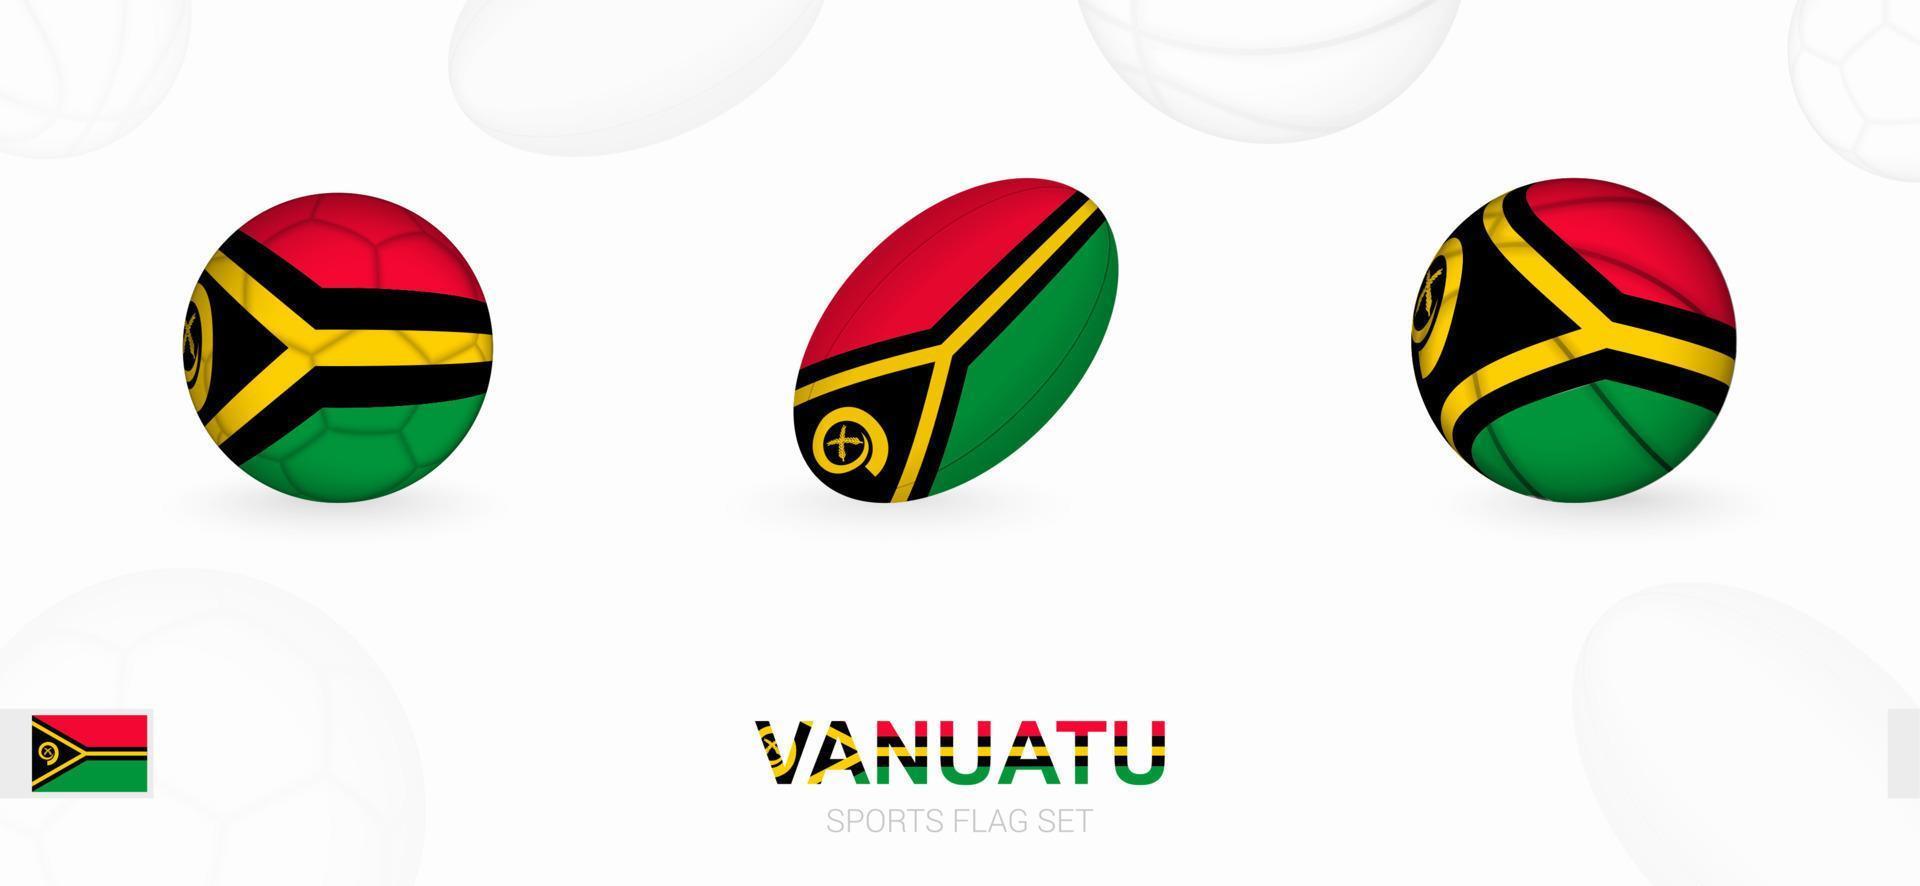 Deportes íconos para fútbol, rugby y baloncesto con el bandera de vanuatu vector